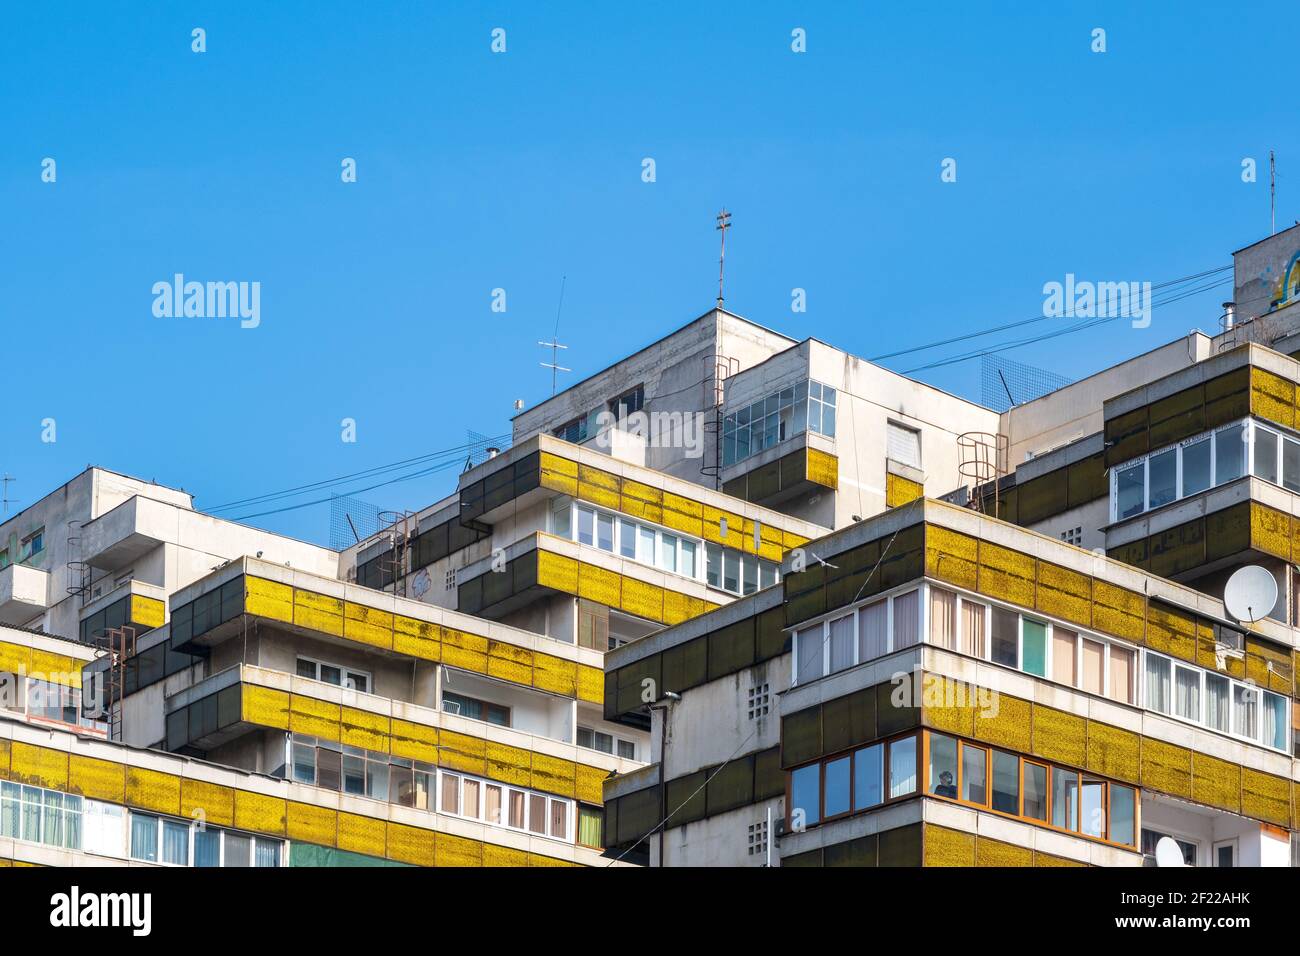 Les logements collectifs construisent dans la période socialiste en Roumanie. Architecture moderniste Banque D'Images